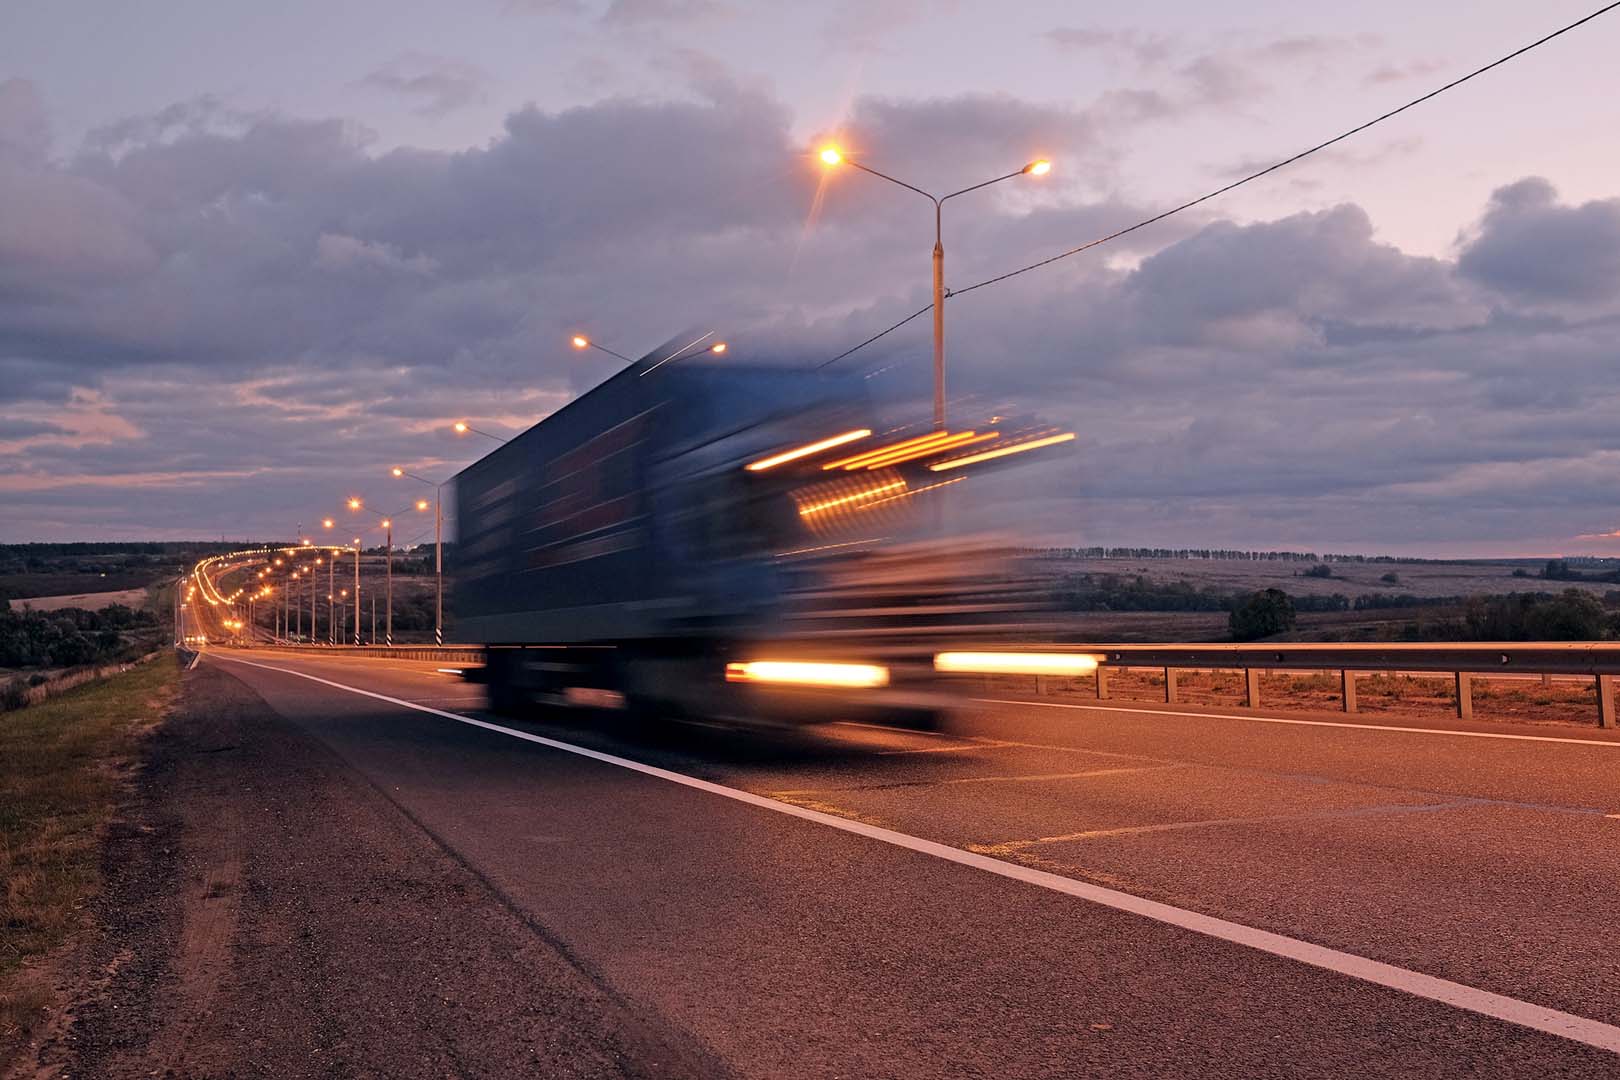 Autotrasporto: tutto il mondo produttivo compatto contro i divieti di circolazione dei camion